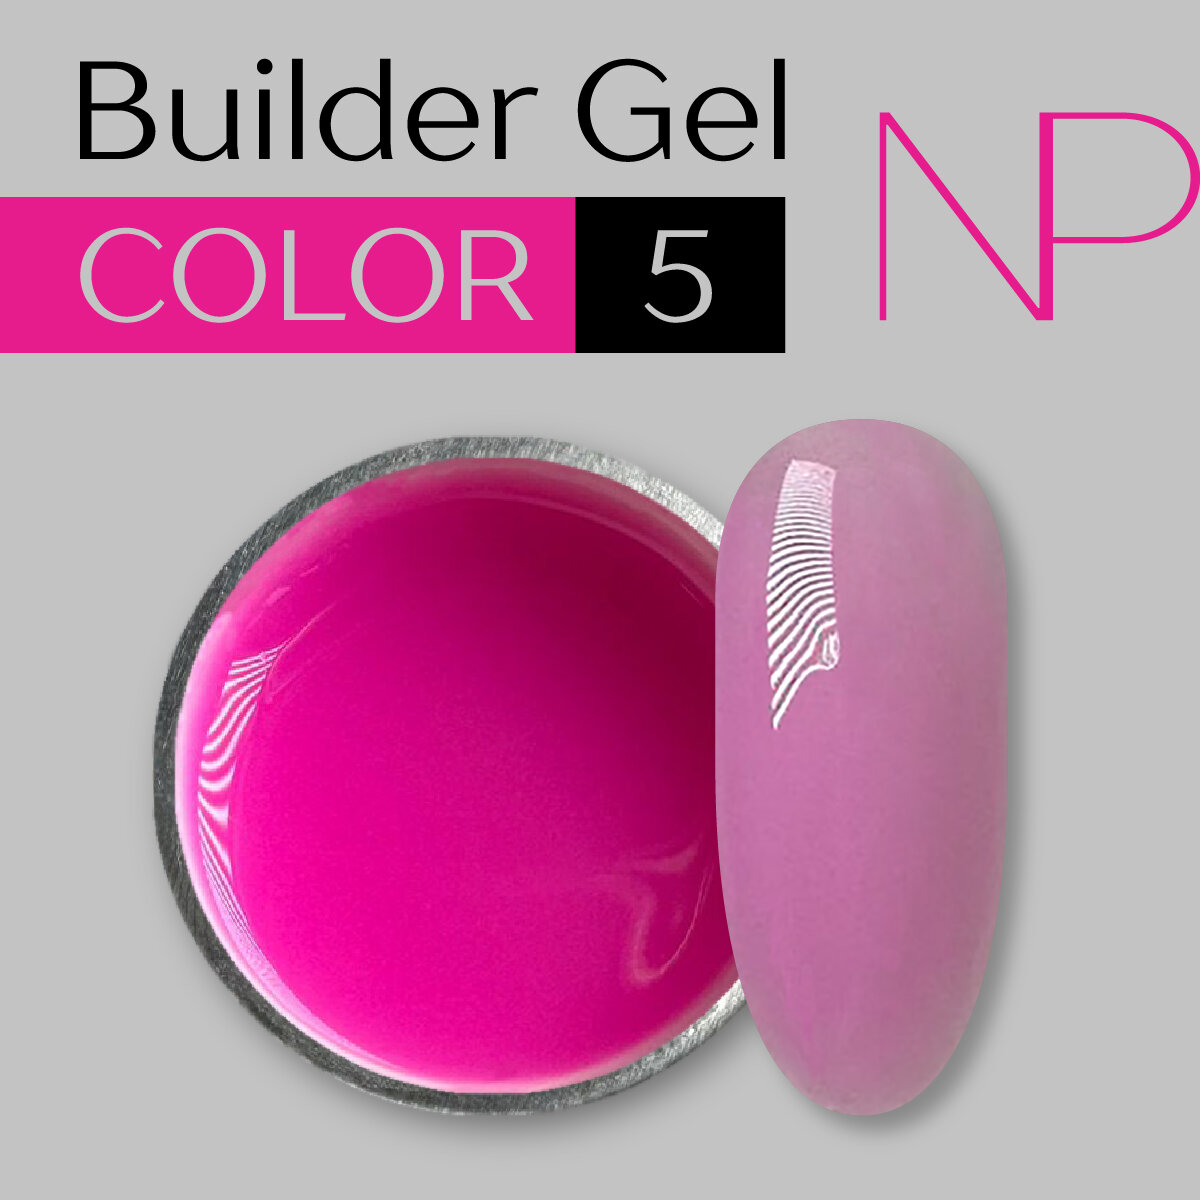 Builder Gel Color 5 15g